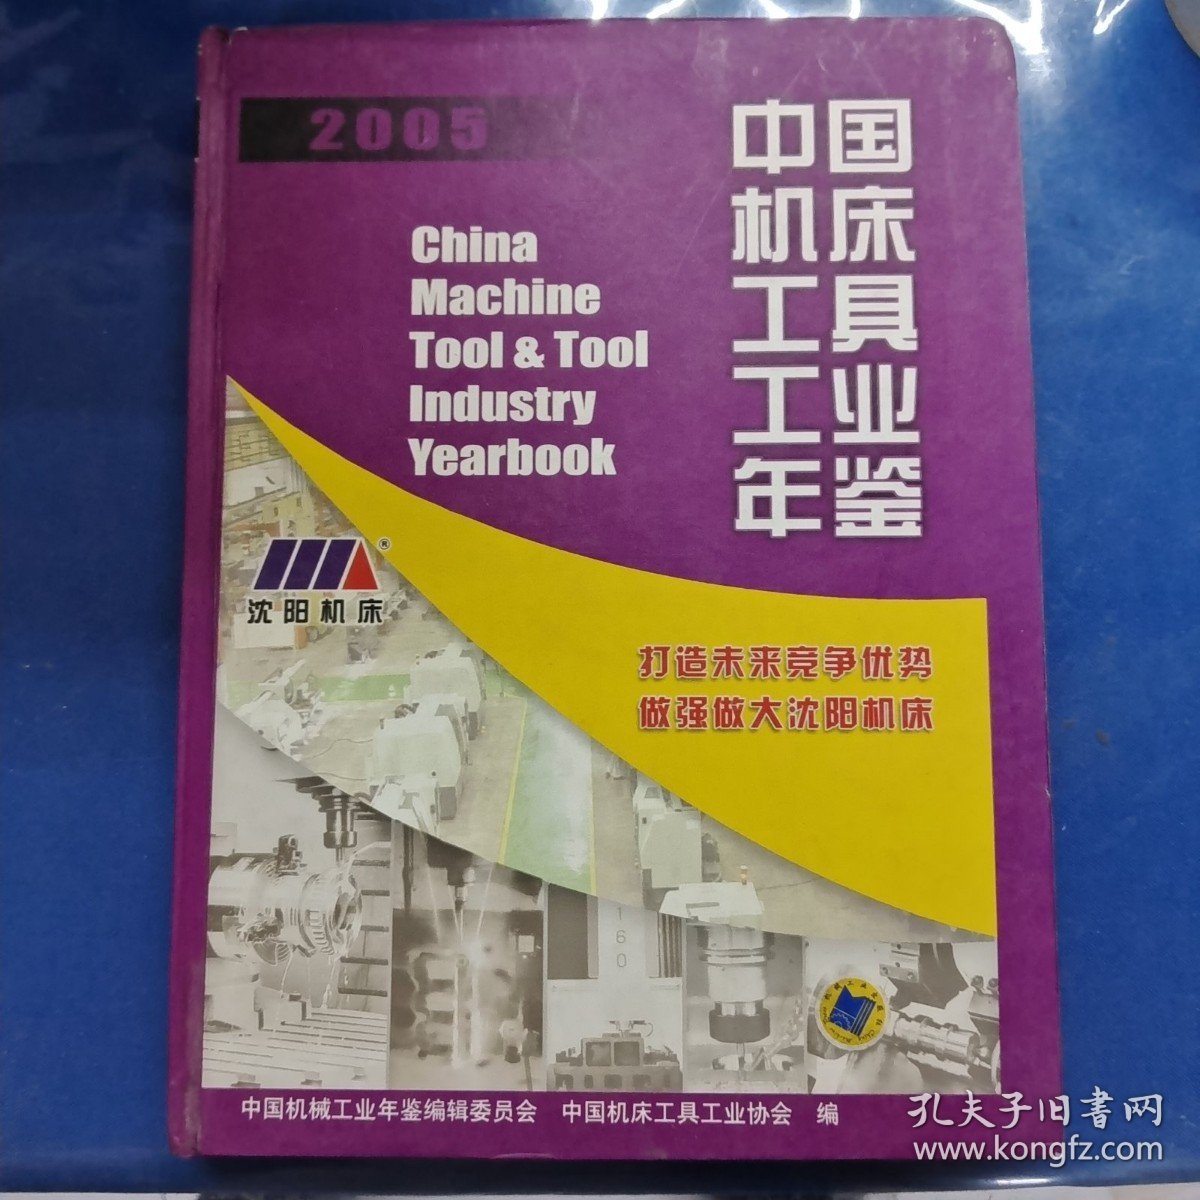 中国机床工具工业年鉴.2005